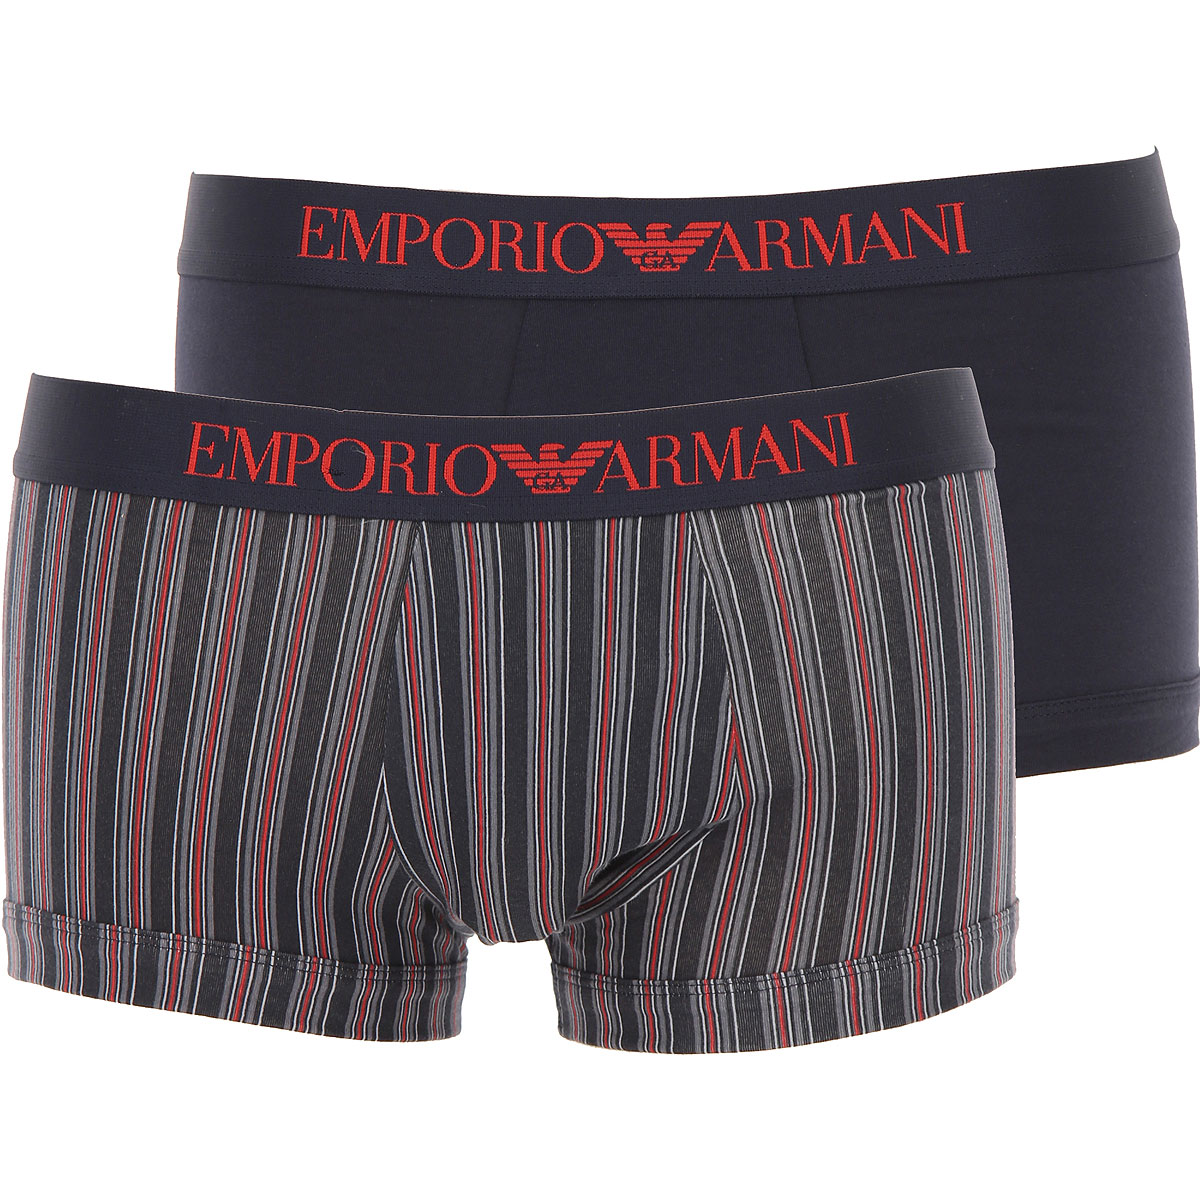 Emporio Armani Boxer Shorts für Herren, Unterhose, Short, Boxer Günstig im Sale, 2 Pack, Marineblau, Baumwolle, 2017, L M XL